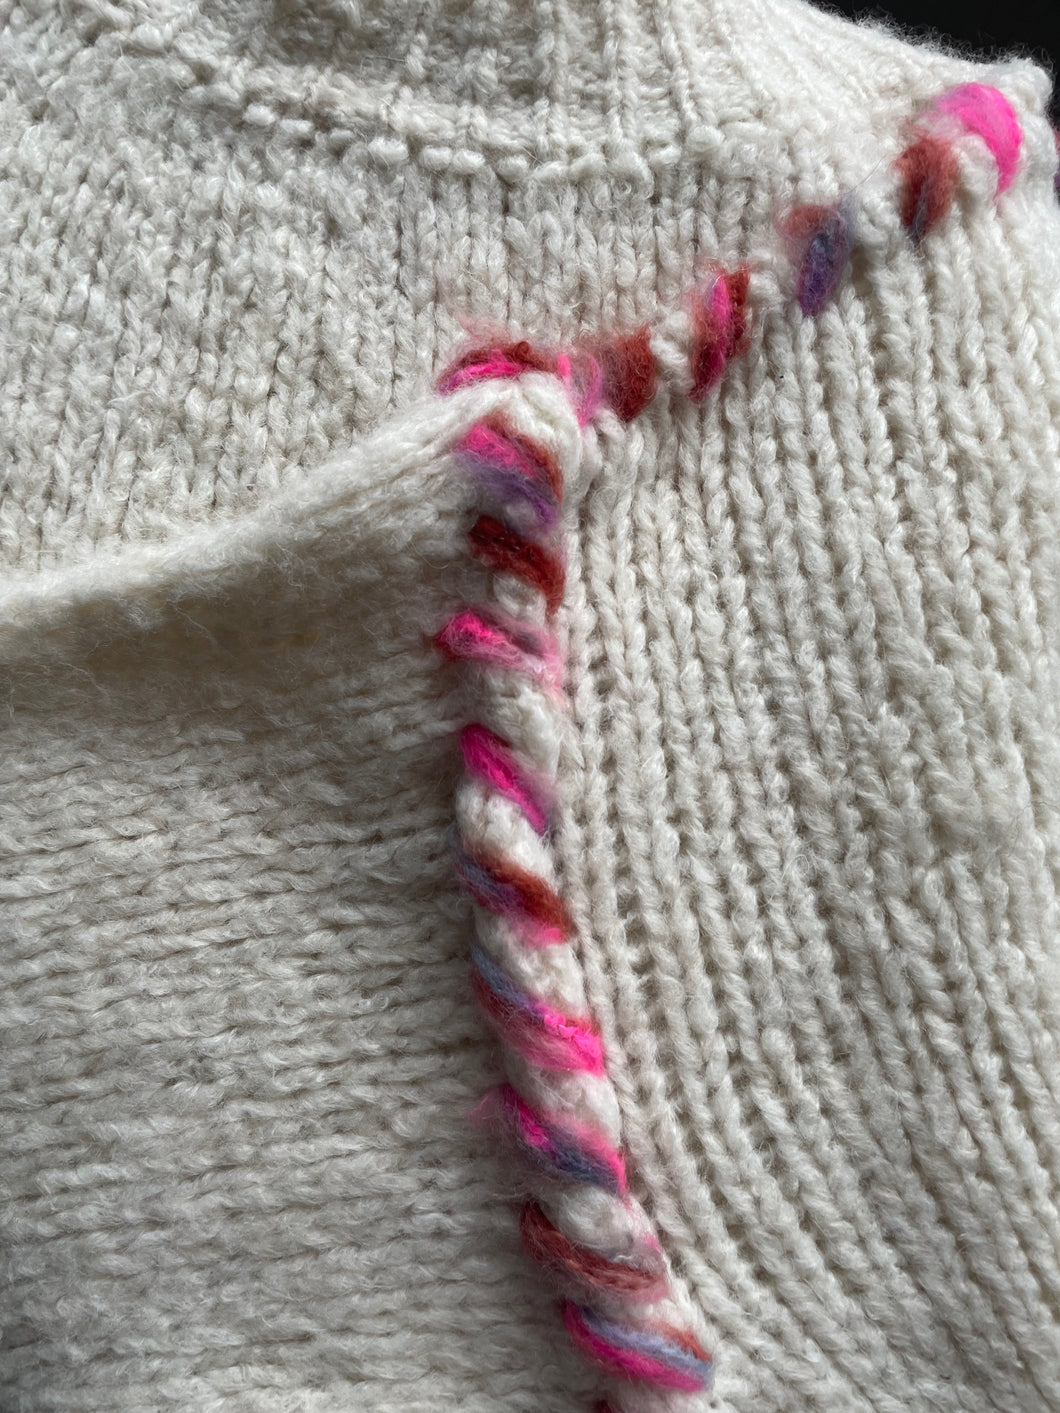 Beige Trui grofgebreid met een turtleneck, prikt niet en heeft een gekleurd detail als naad. De trui is verkrijgbaar in one size, draagbaar voor maat S t/m XL en is verkrijgbaar in verschillende kleuren: Beige/roze, Beige/brique.

